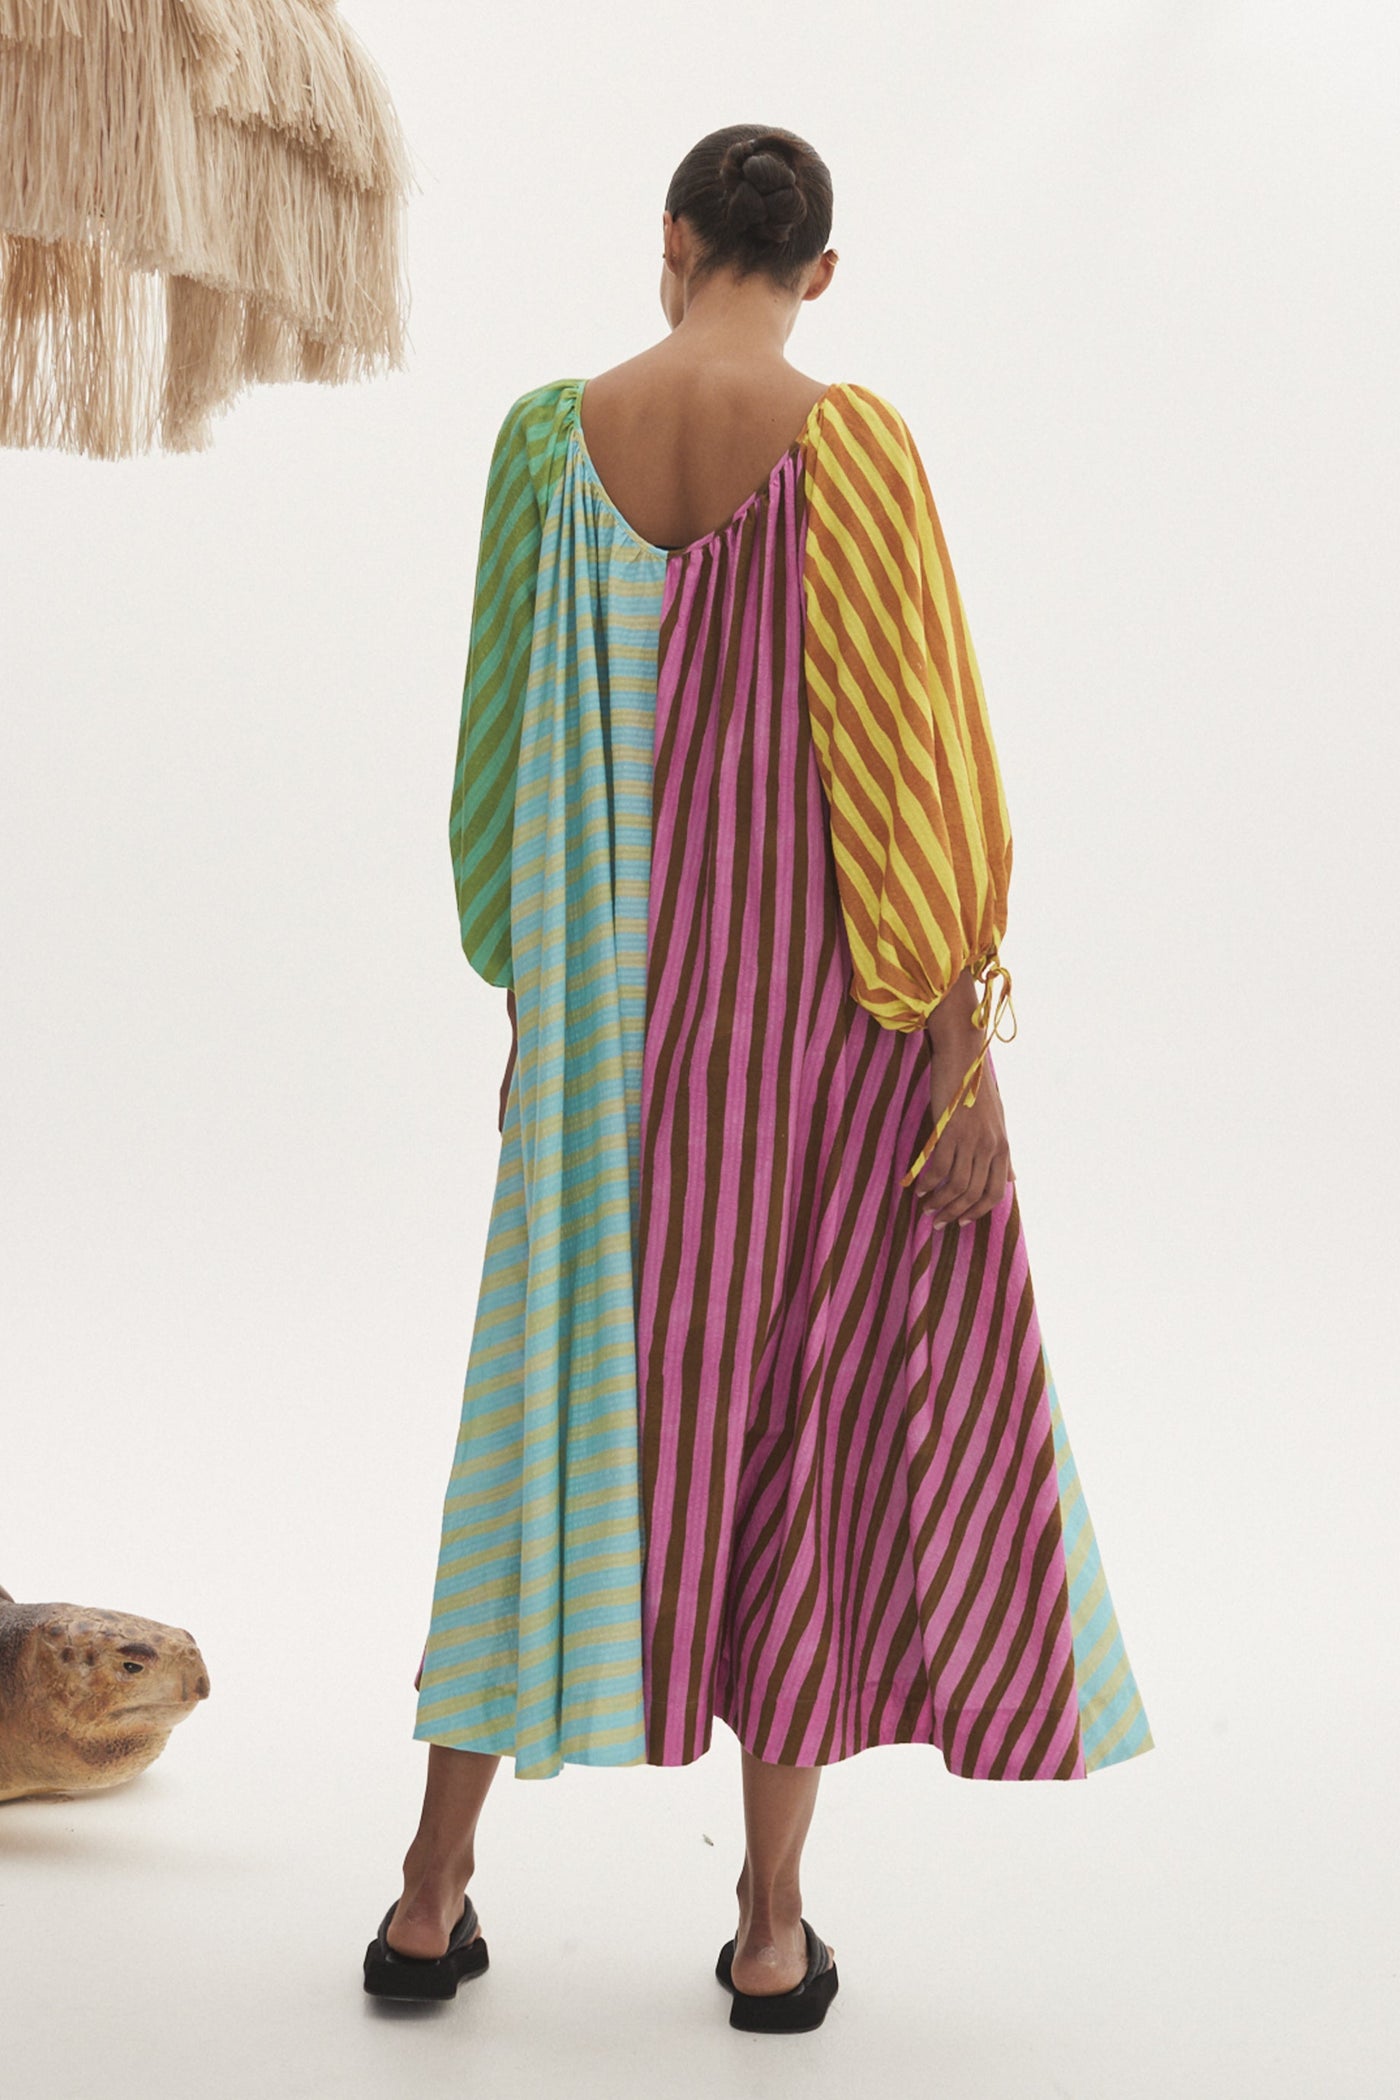 Alemais Bobbie Dress - Multi Coloured